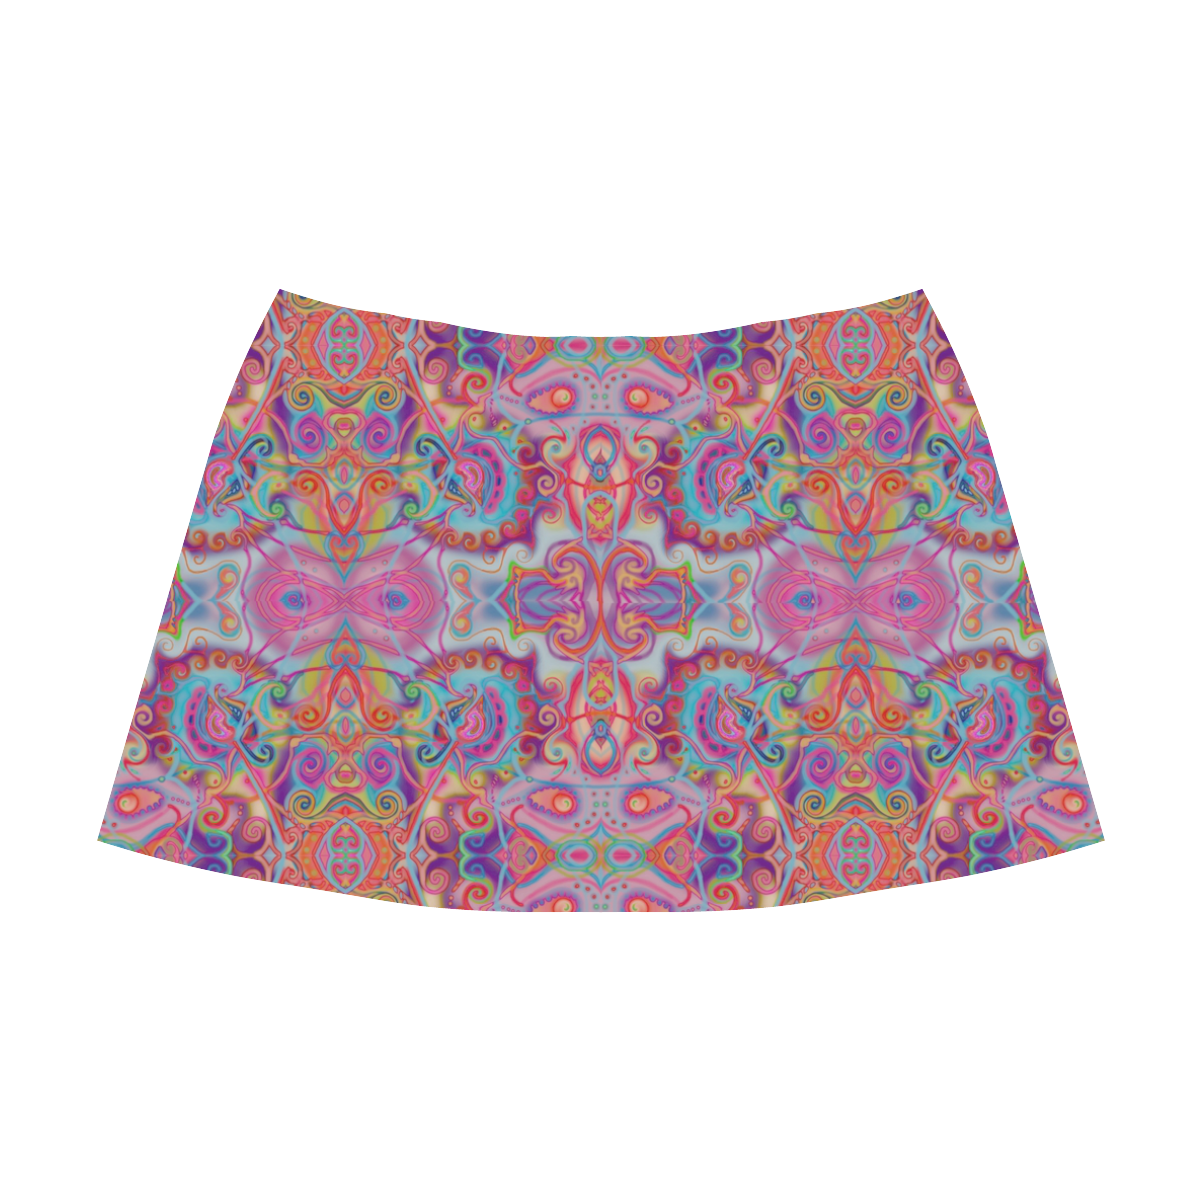 volutes 2 Mnemosyne Women's Crepe Skirt (Model D16)